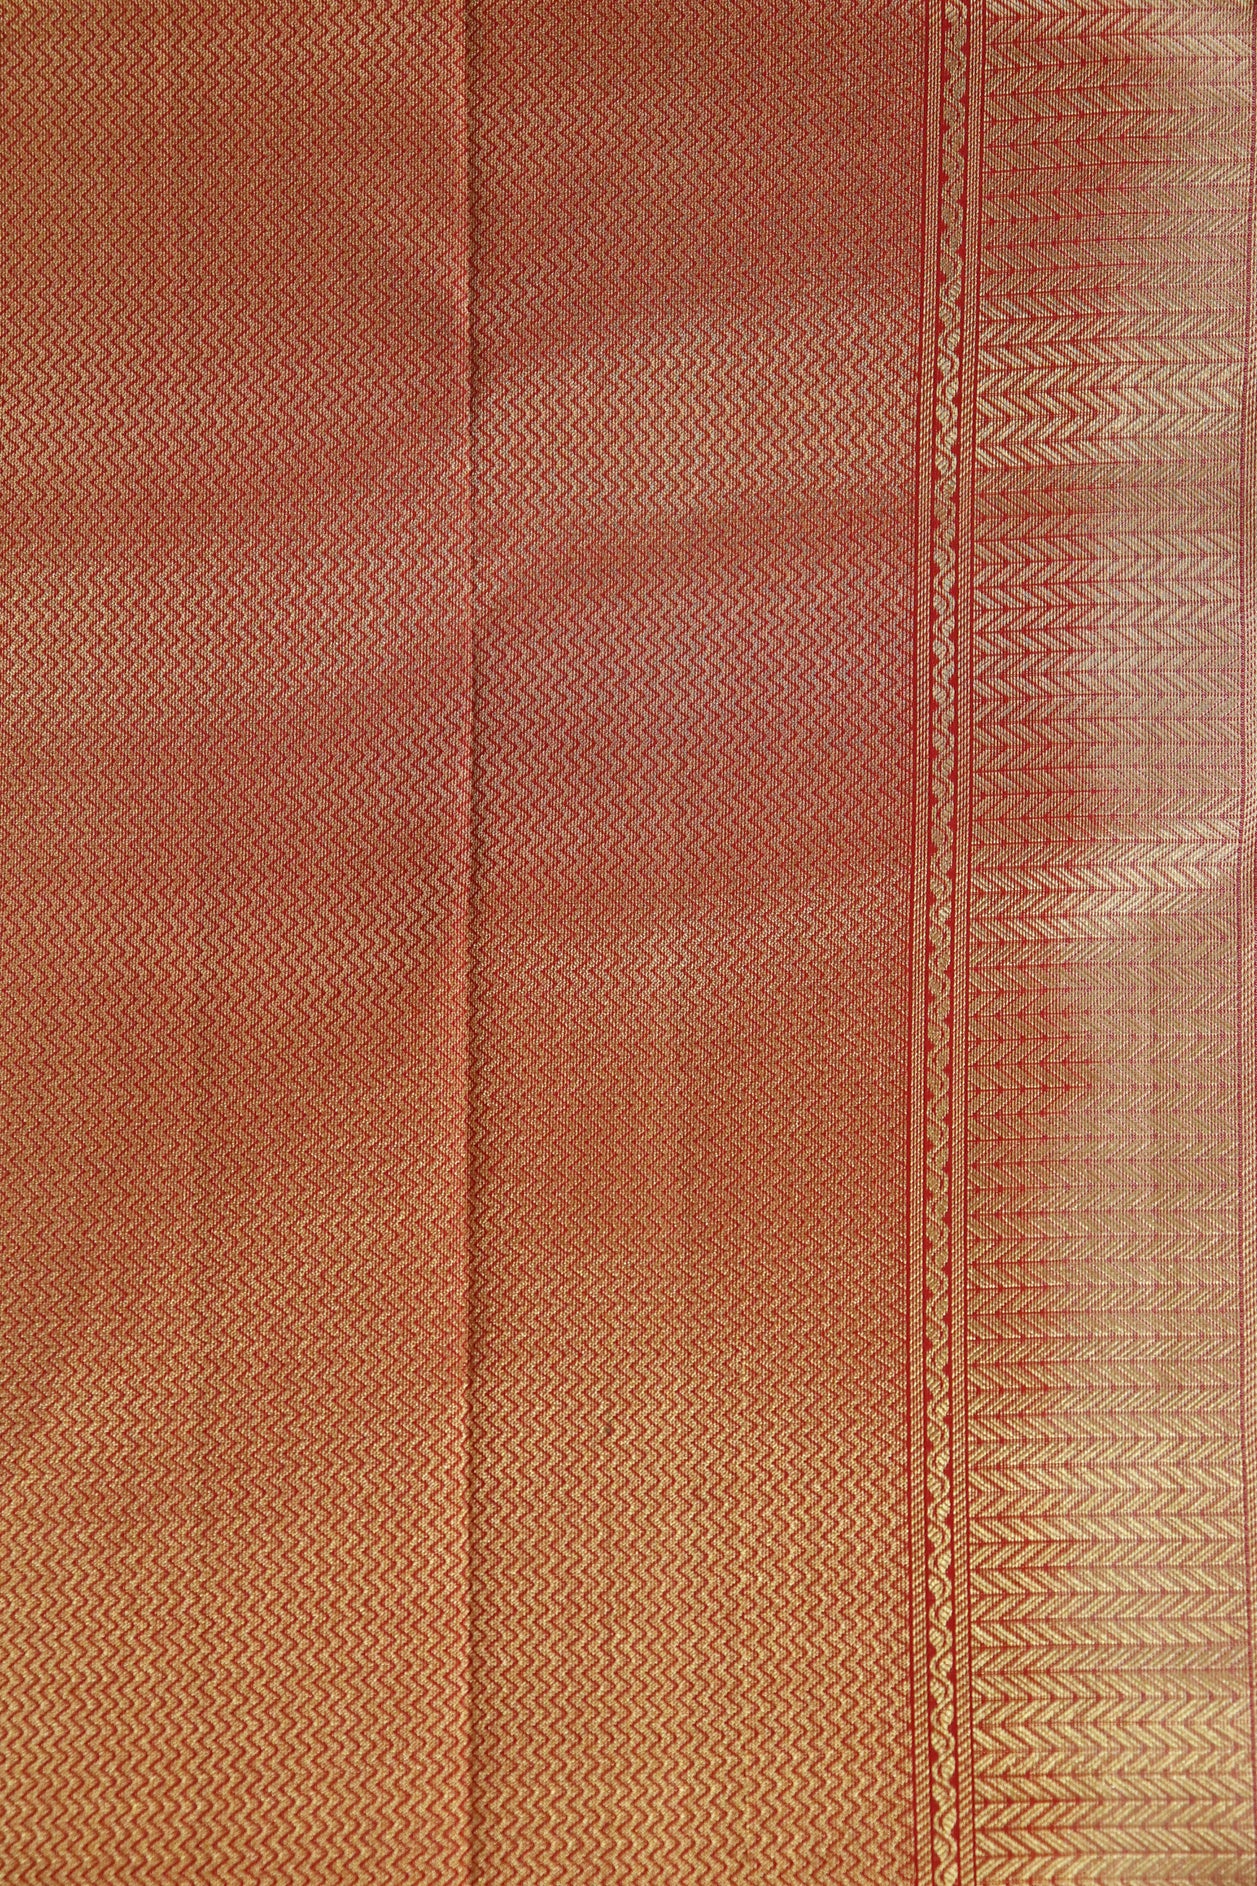 Fine Copper Mesh Fabric